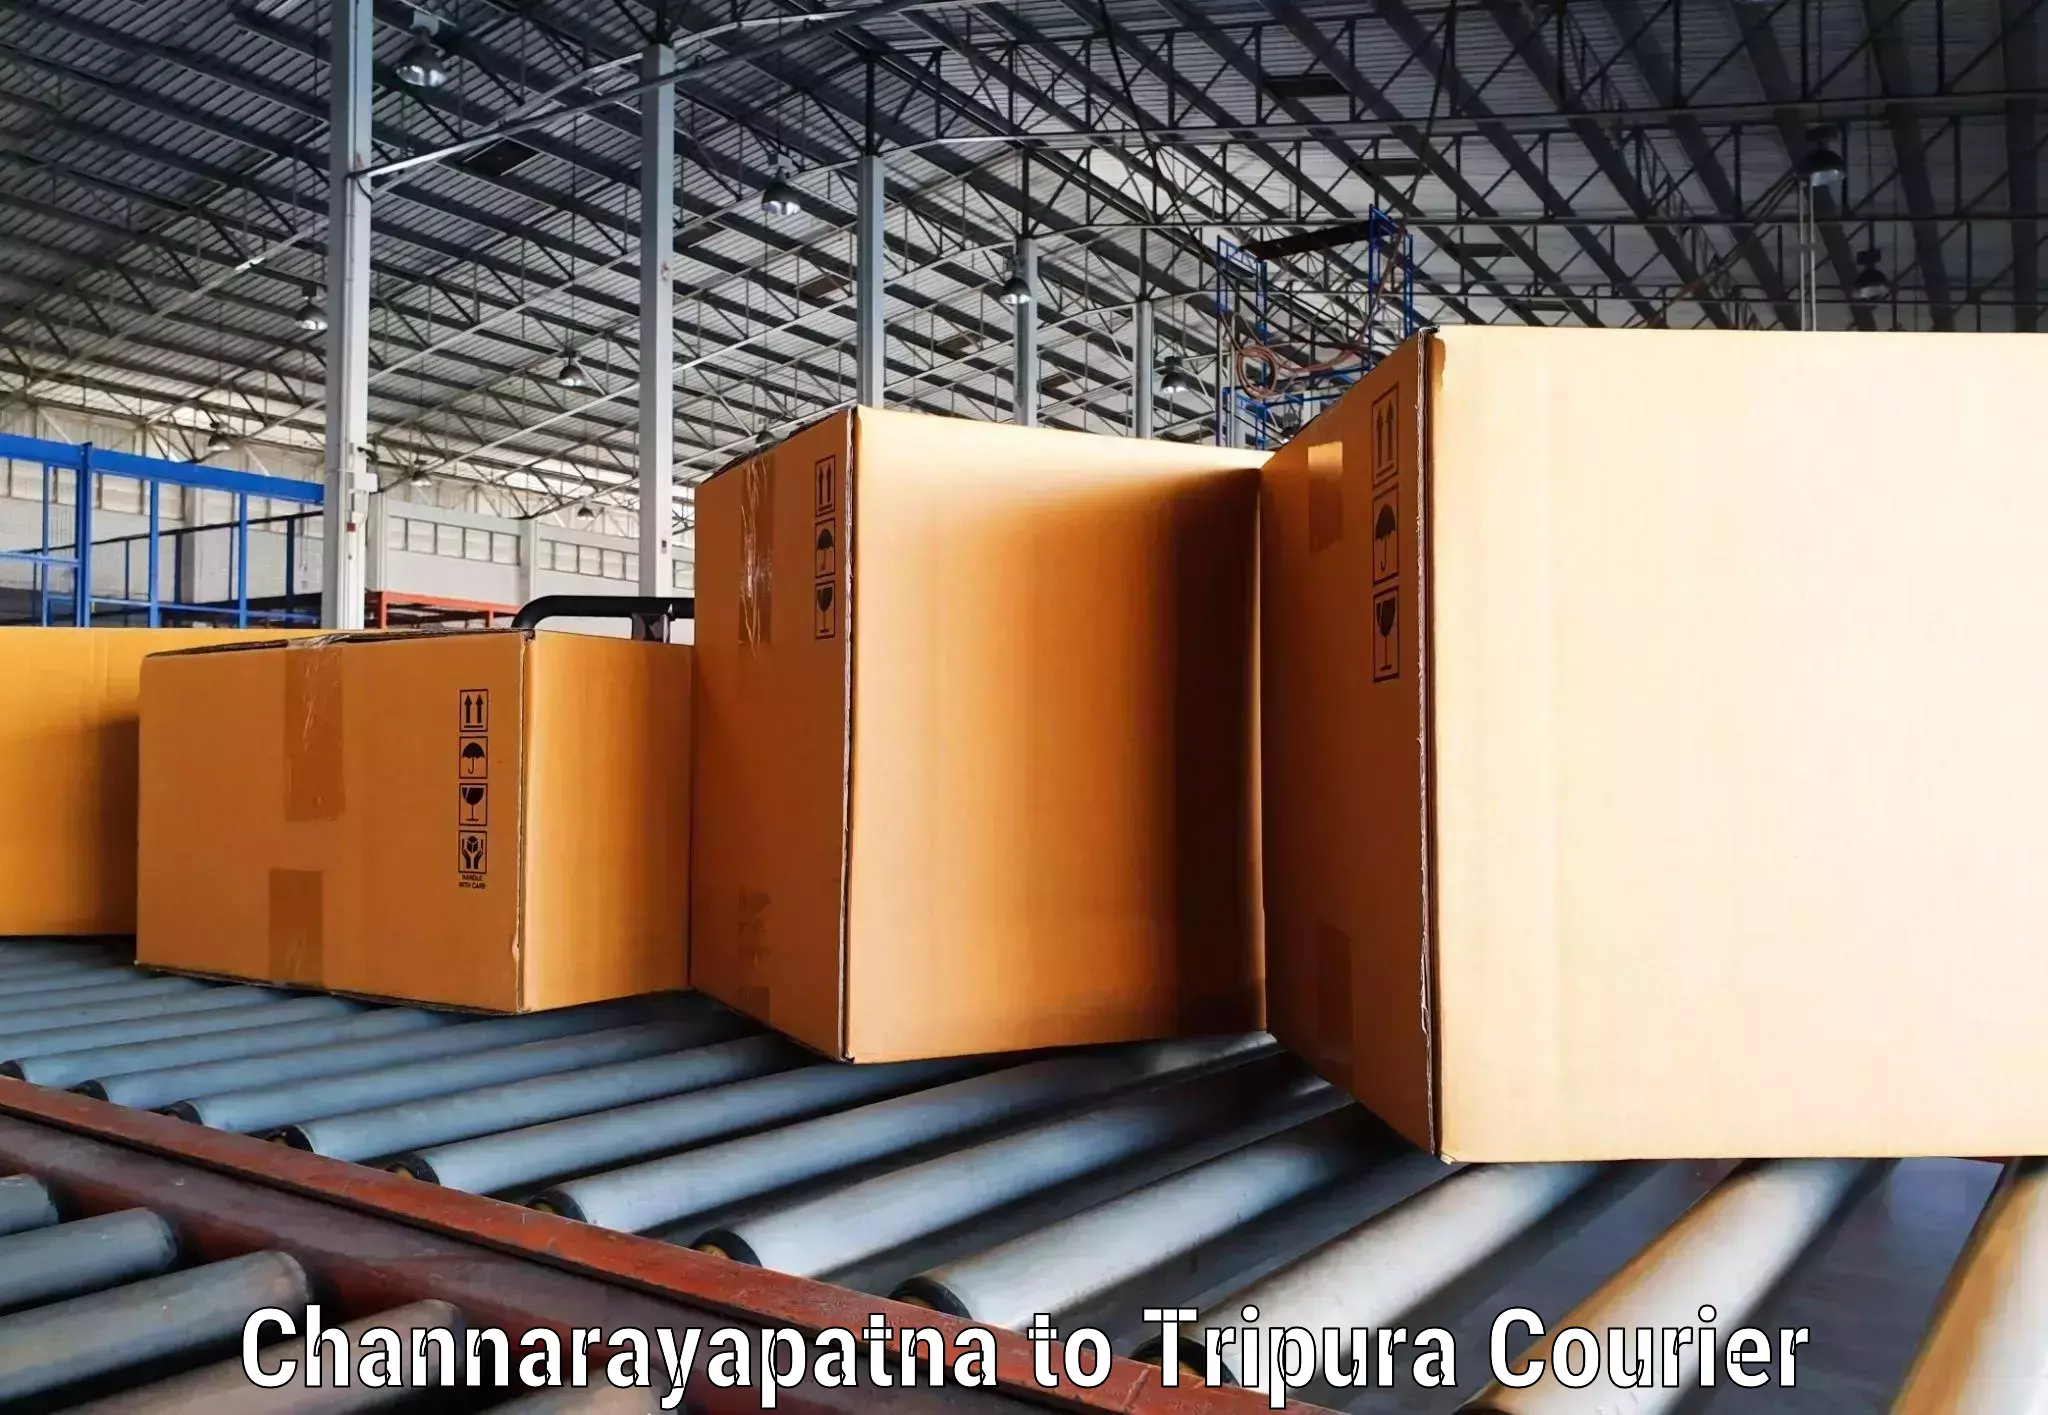 Global logistics network Channarayapatna to Ambassa